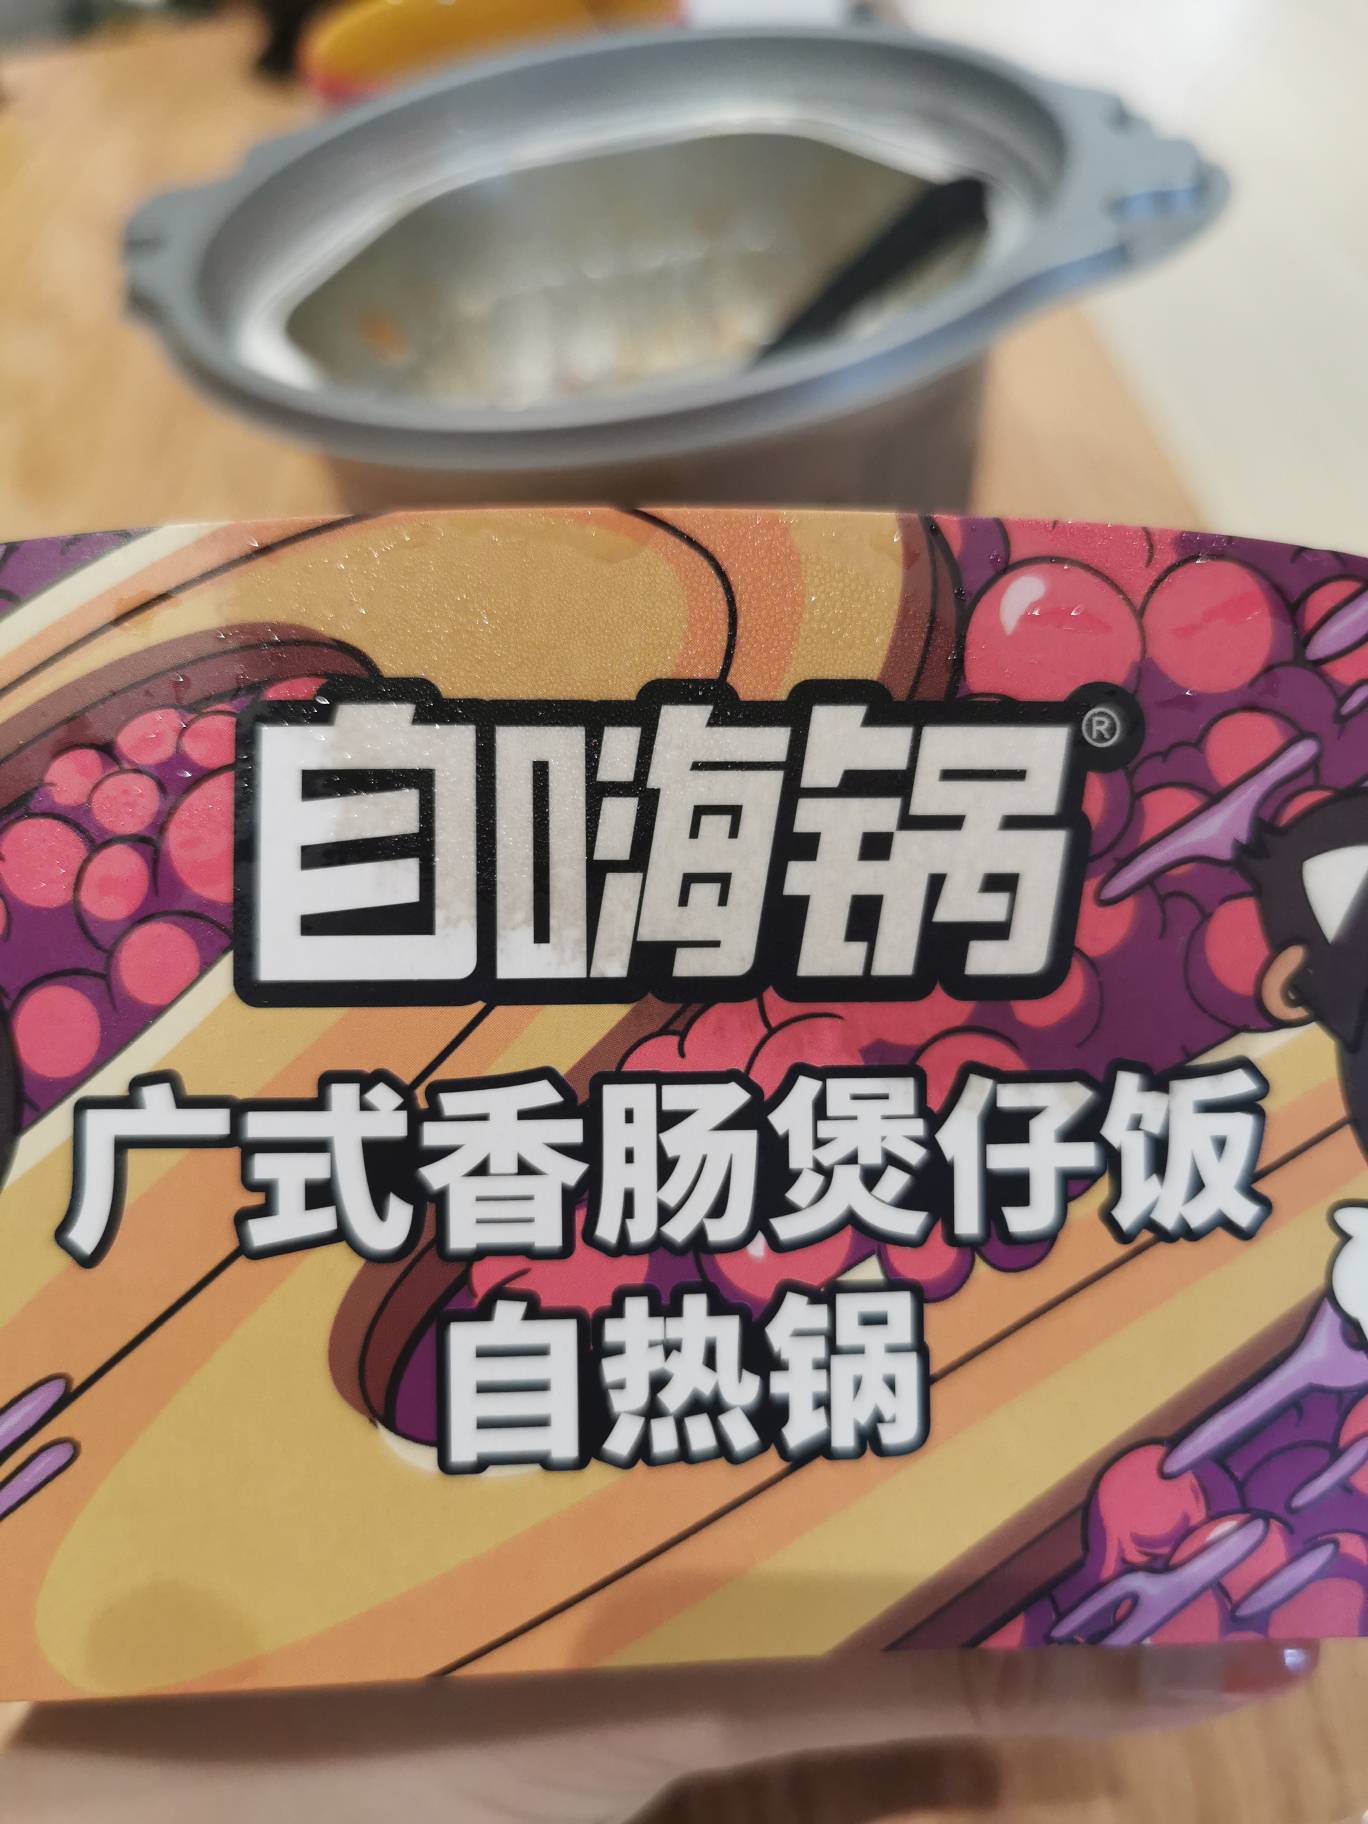 自嗨锅广式腊肠煲仔饭的热量和减肥功效